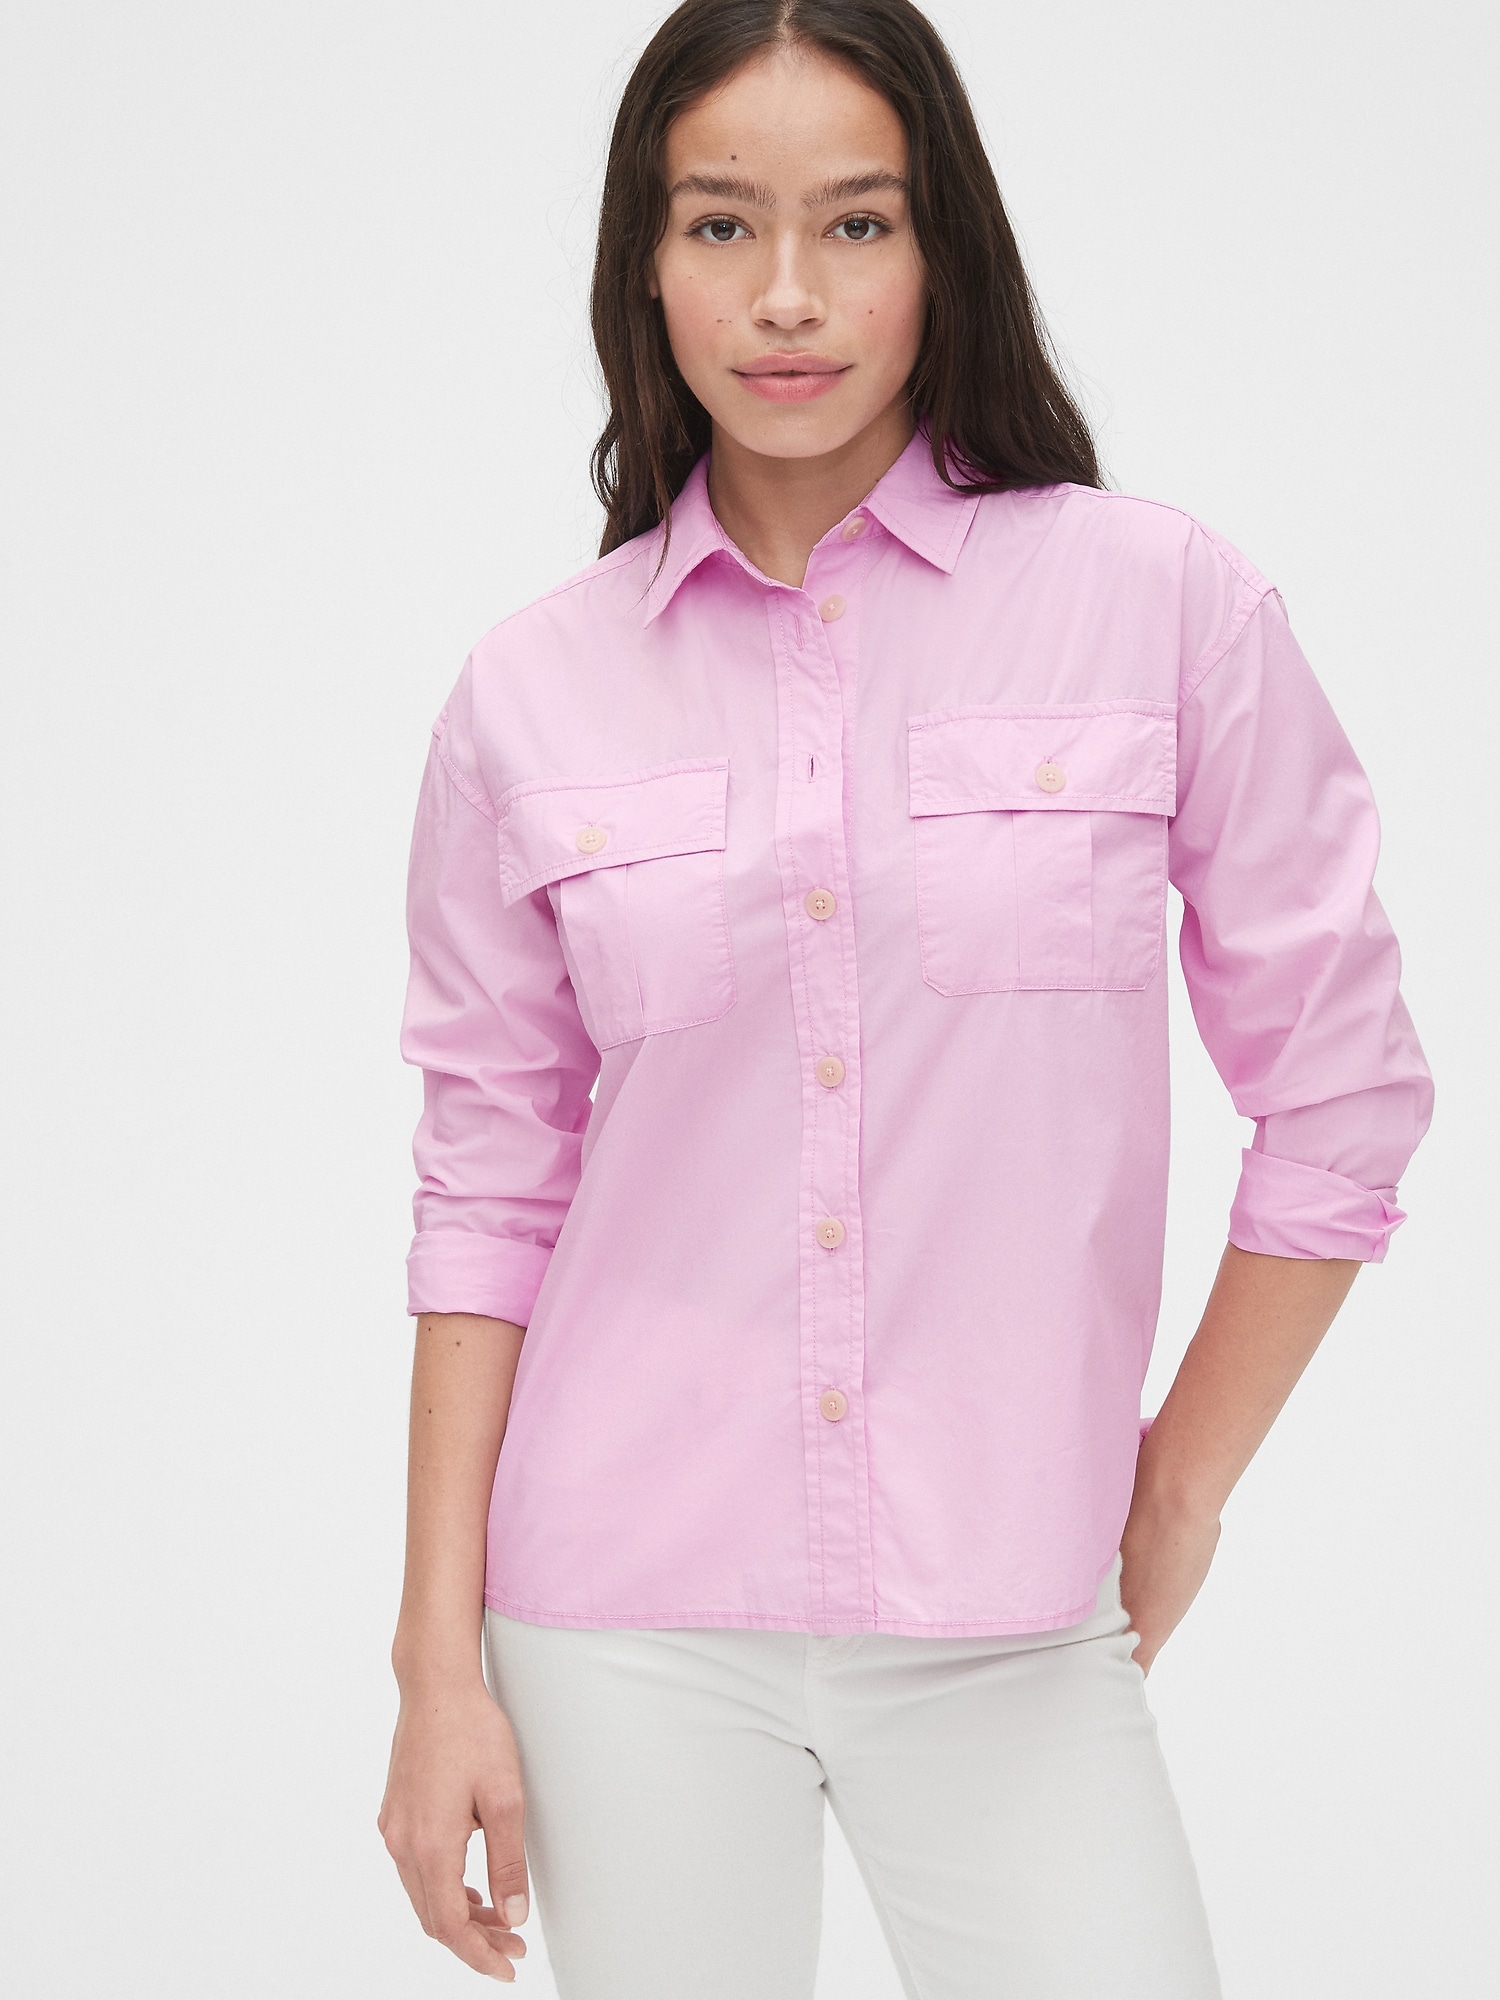 shirt button gap